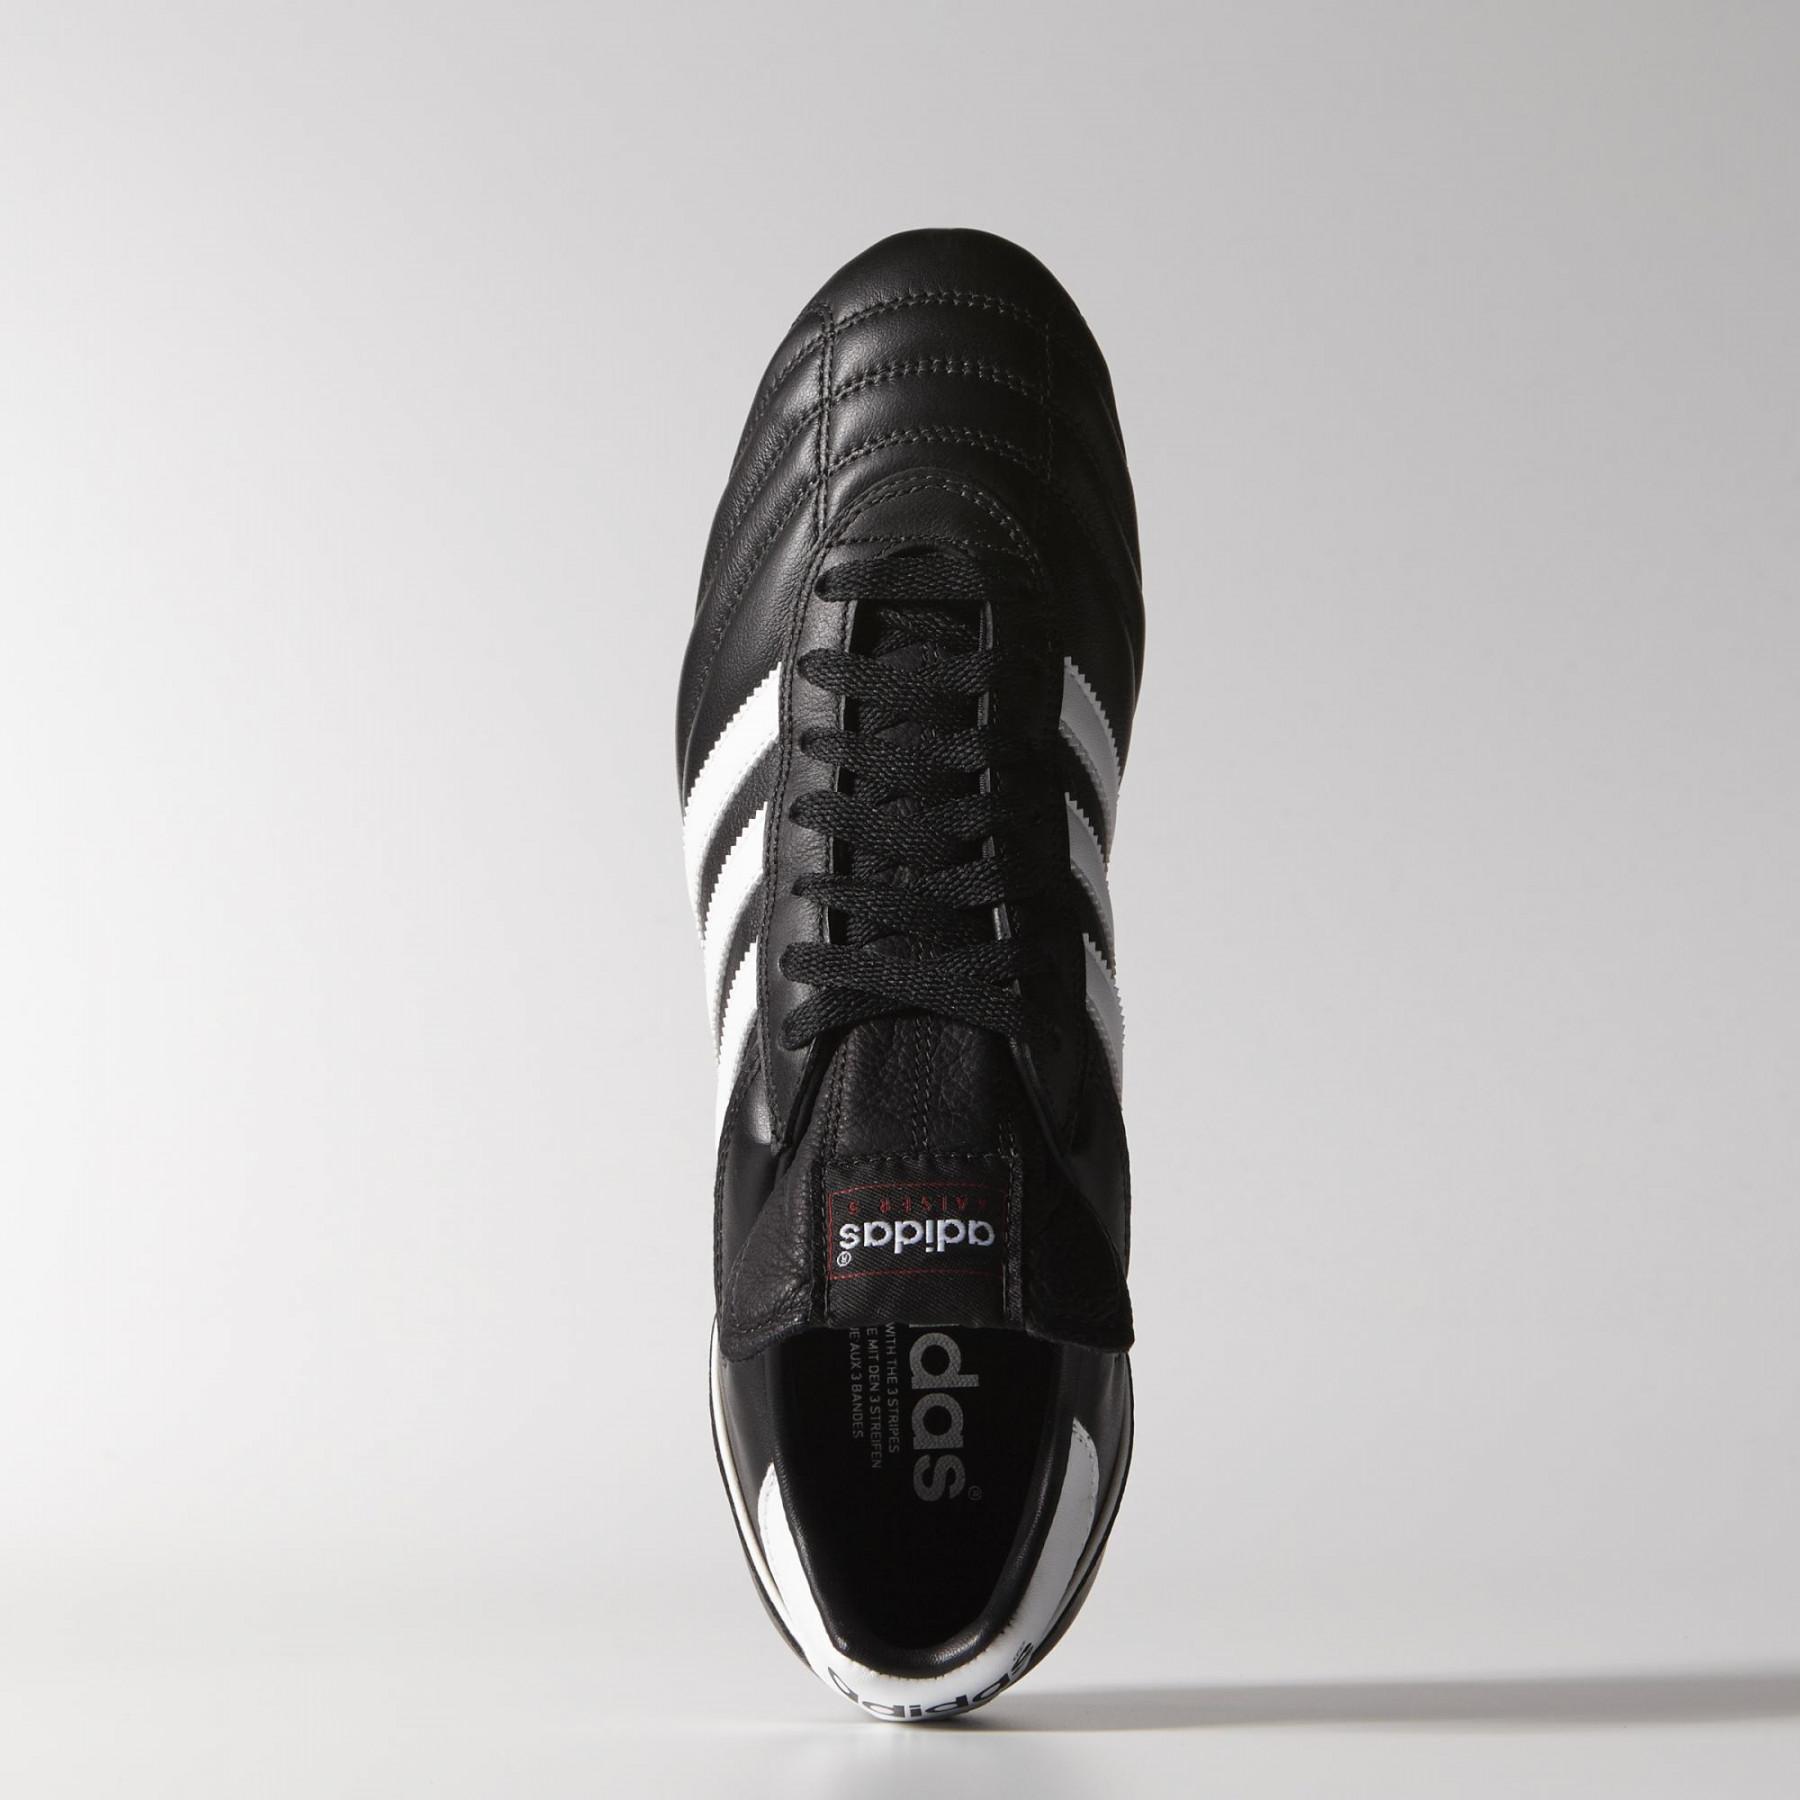 Chaussures de football adidas Kaiser 5 CUP